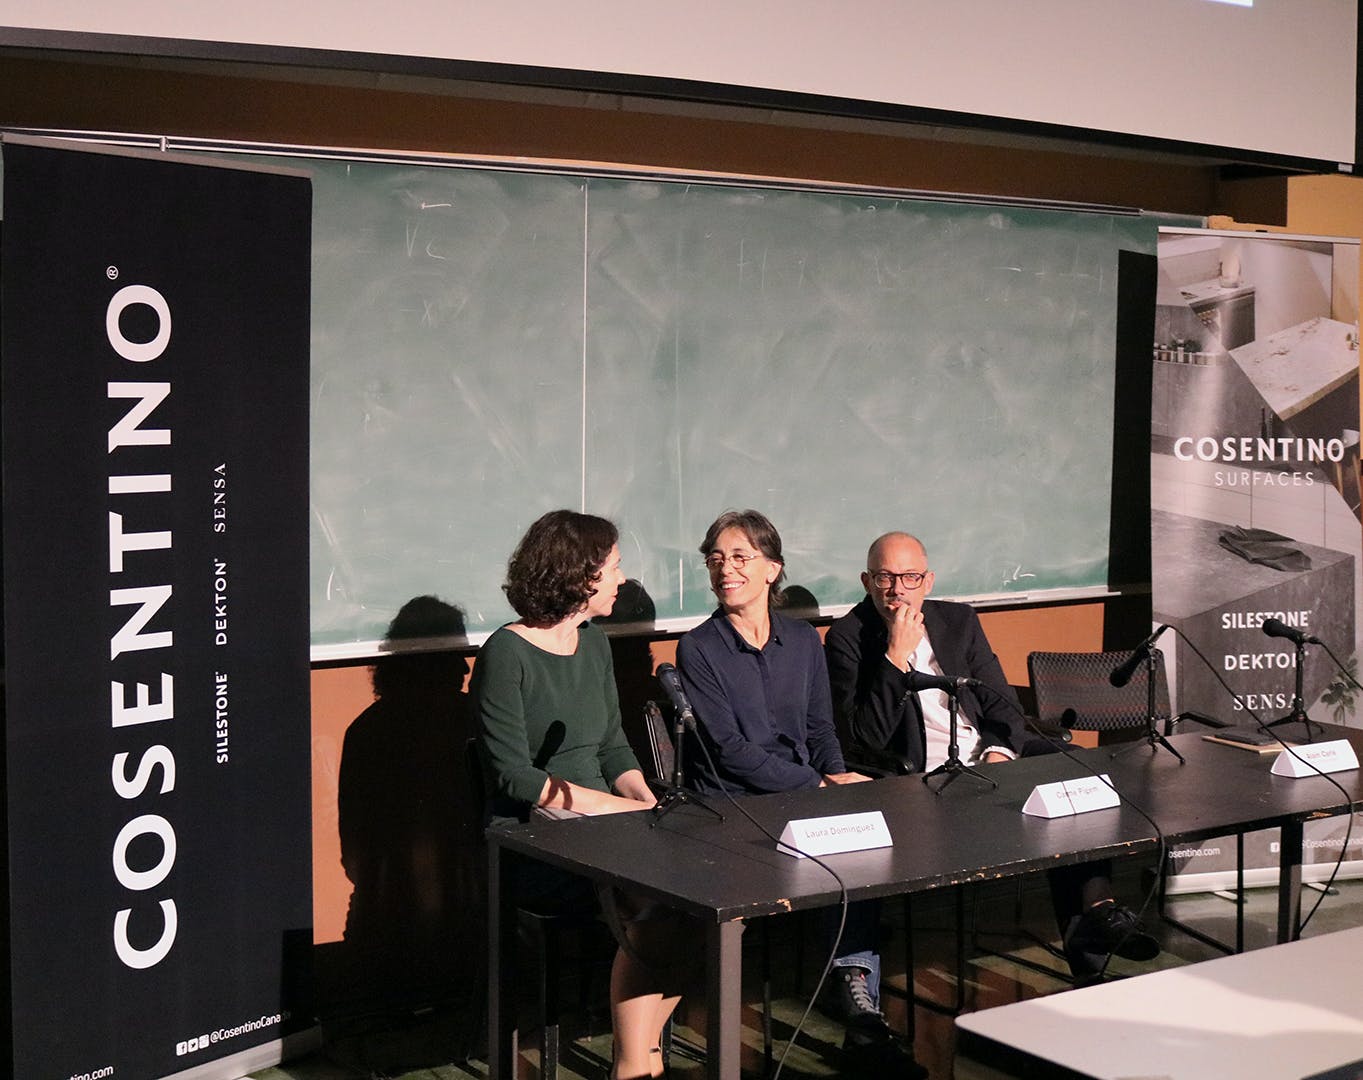 Image of Conferencia en Escuela de Arquitectura de la Universidad McGill de Montreal Made in Spain Cosentino 1 in Cosentino with "MadeinSpain" 2018 - Cosentino